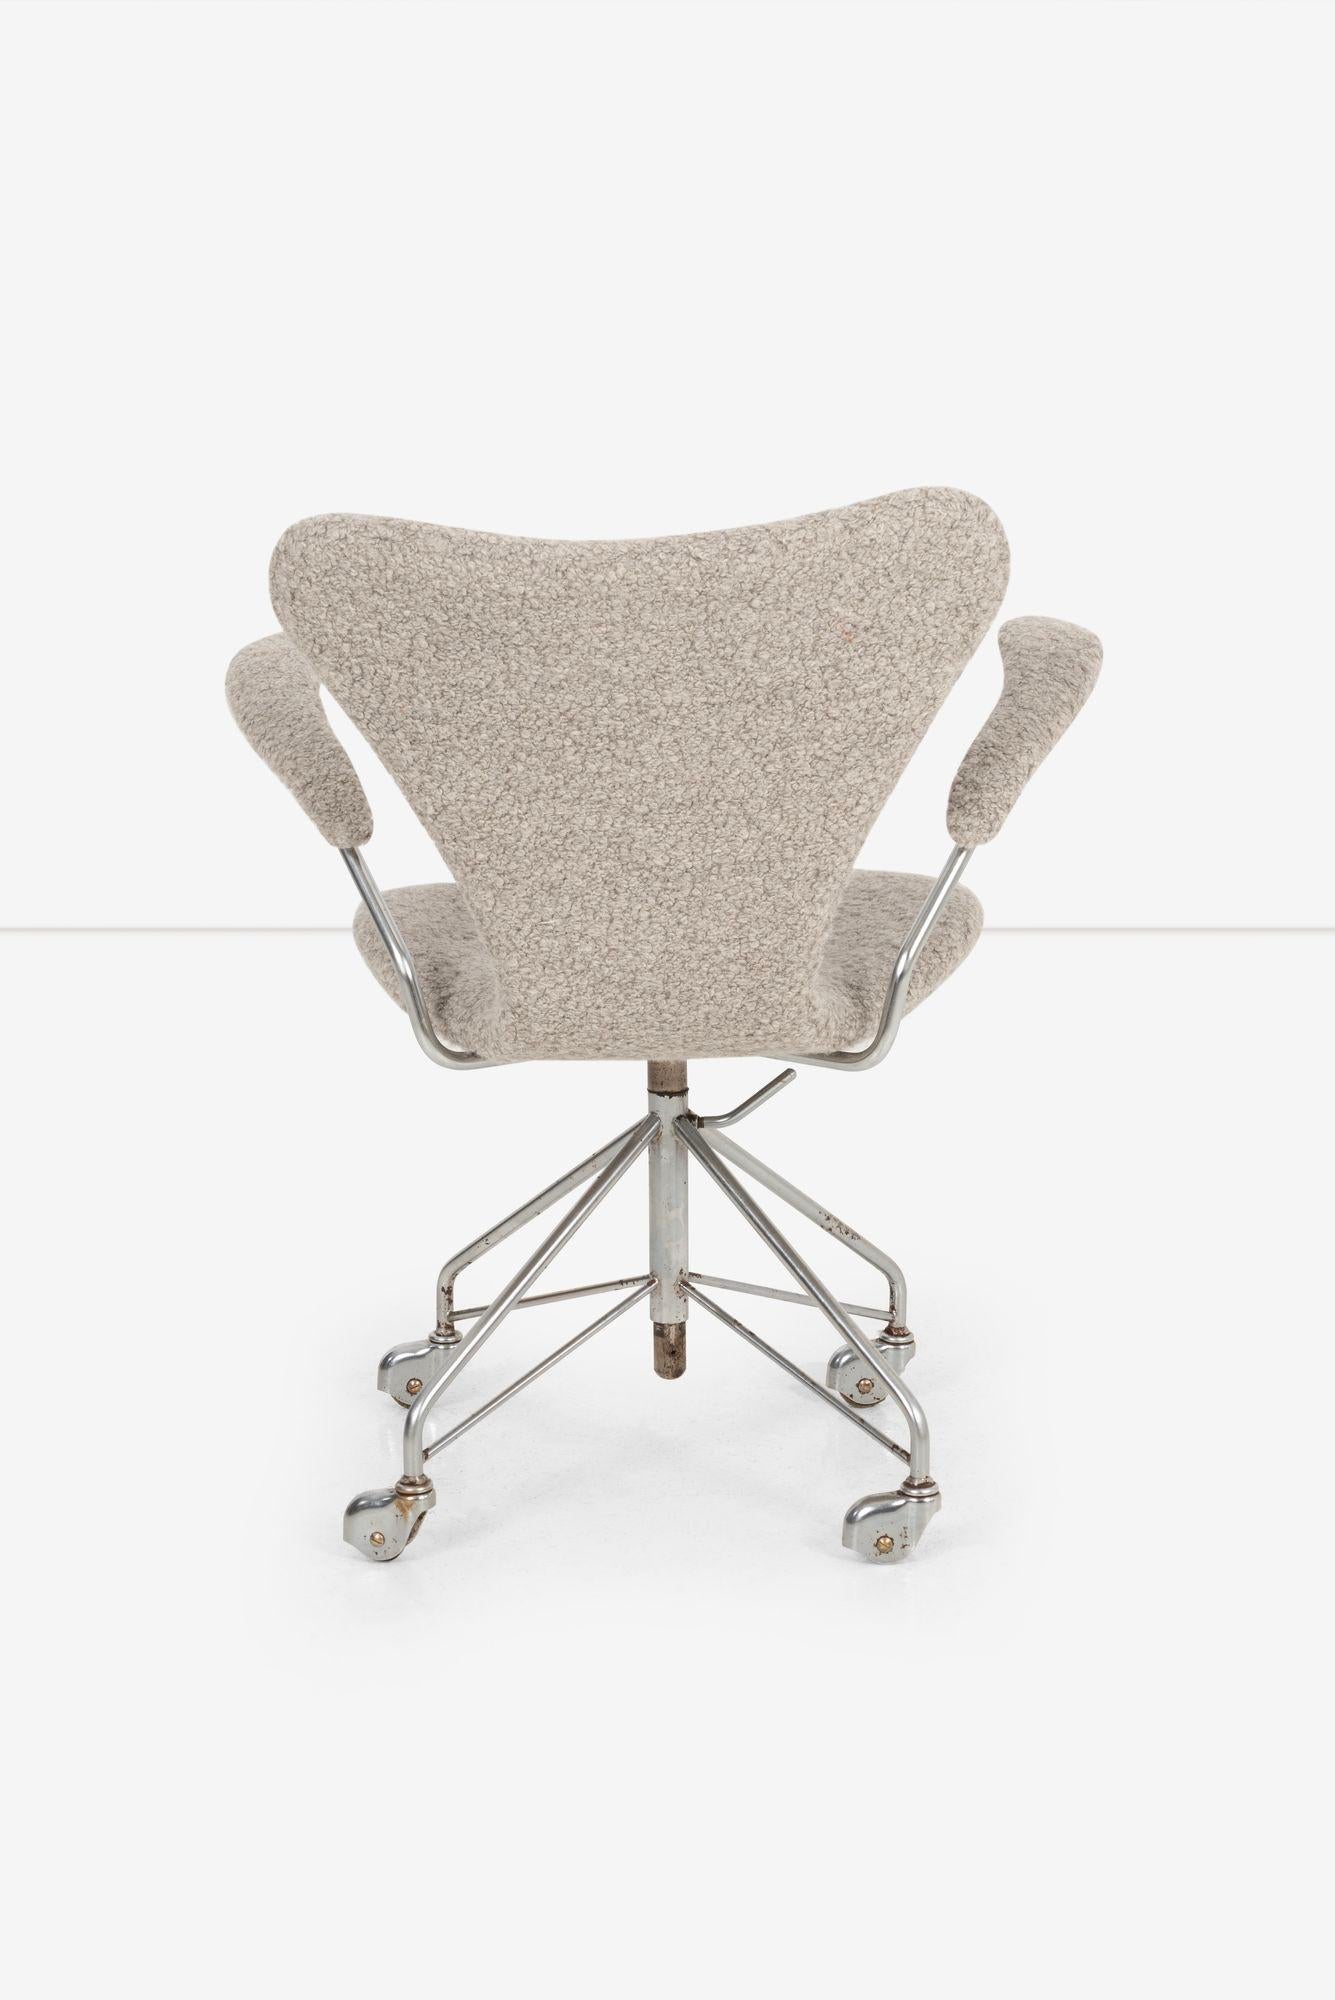 Mid-20th Century Arne Jacobsen Sevener Desk Chair, model 3117 For Sale